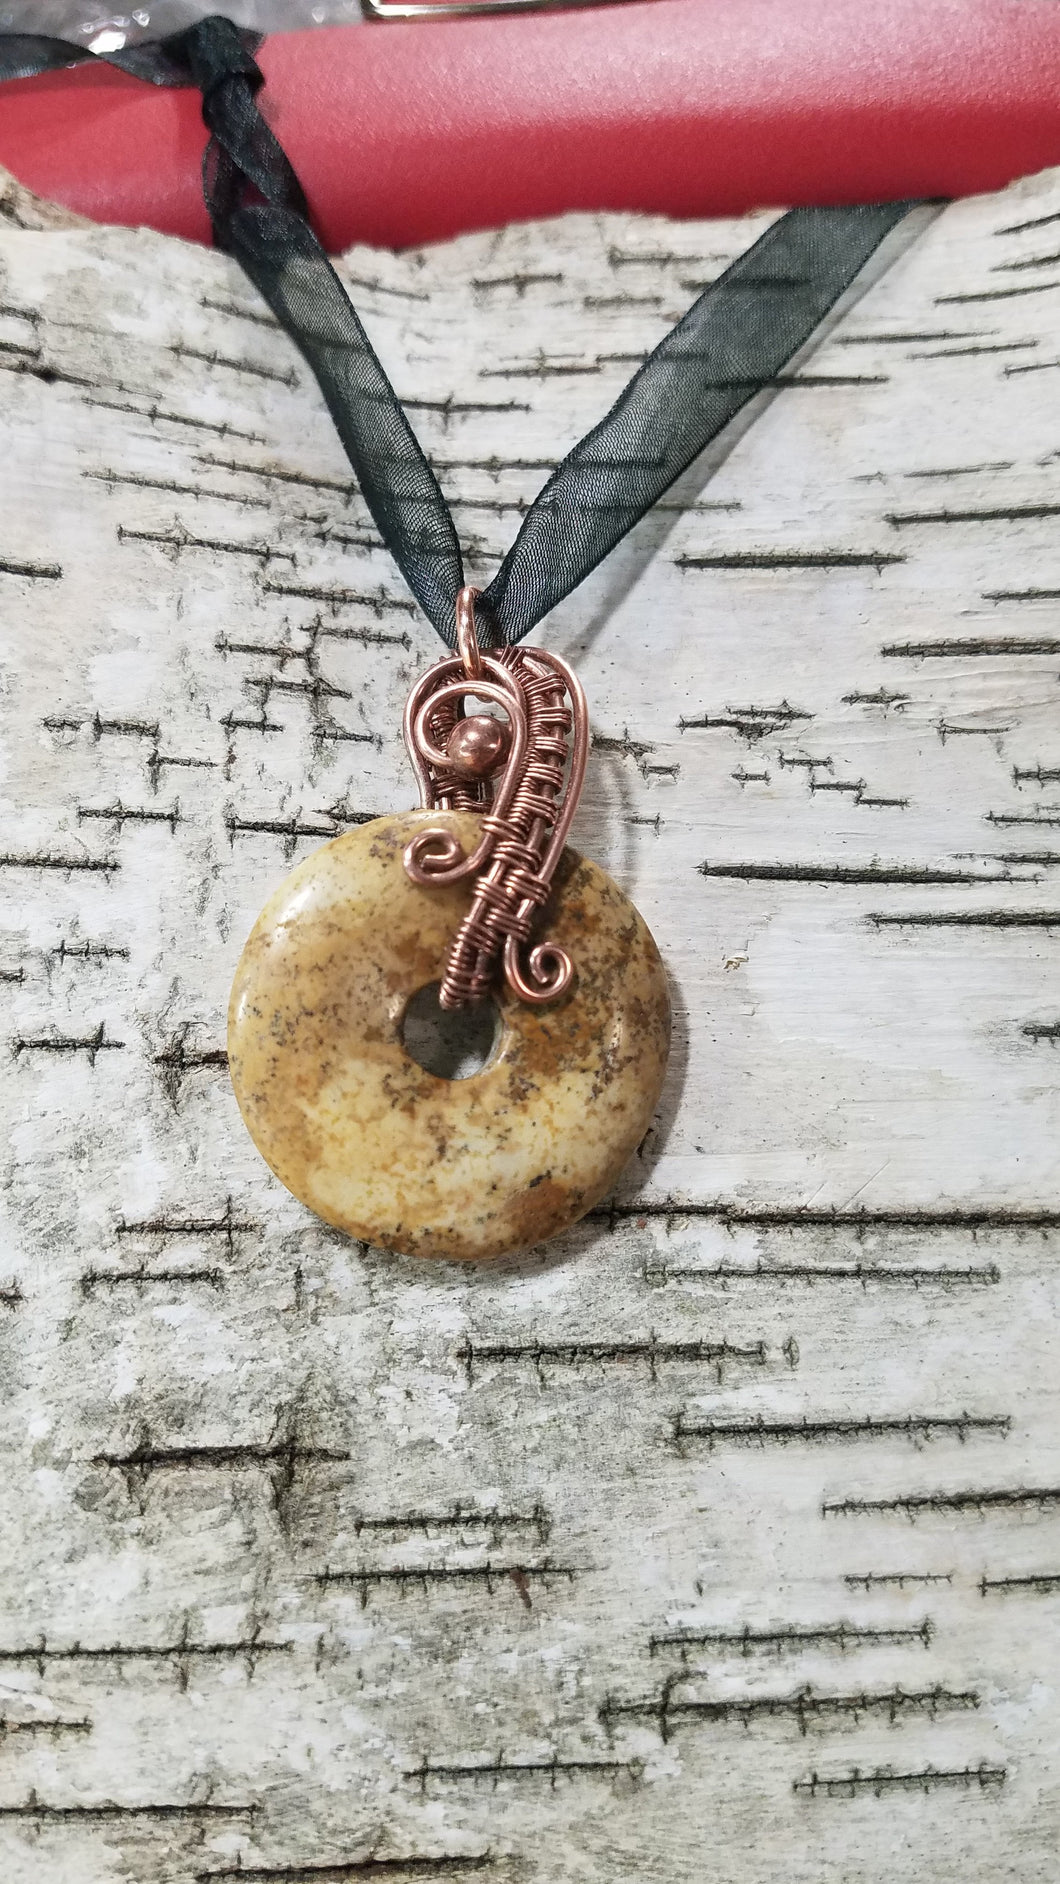 Pendant copper wire woven picture Jasper donut bead